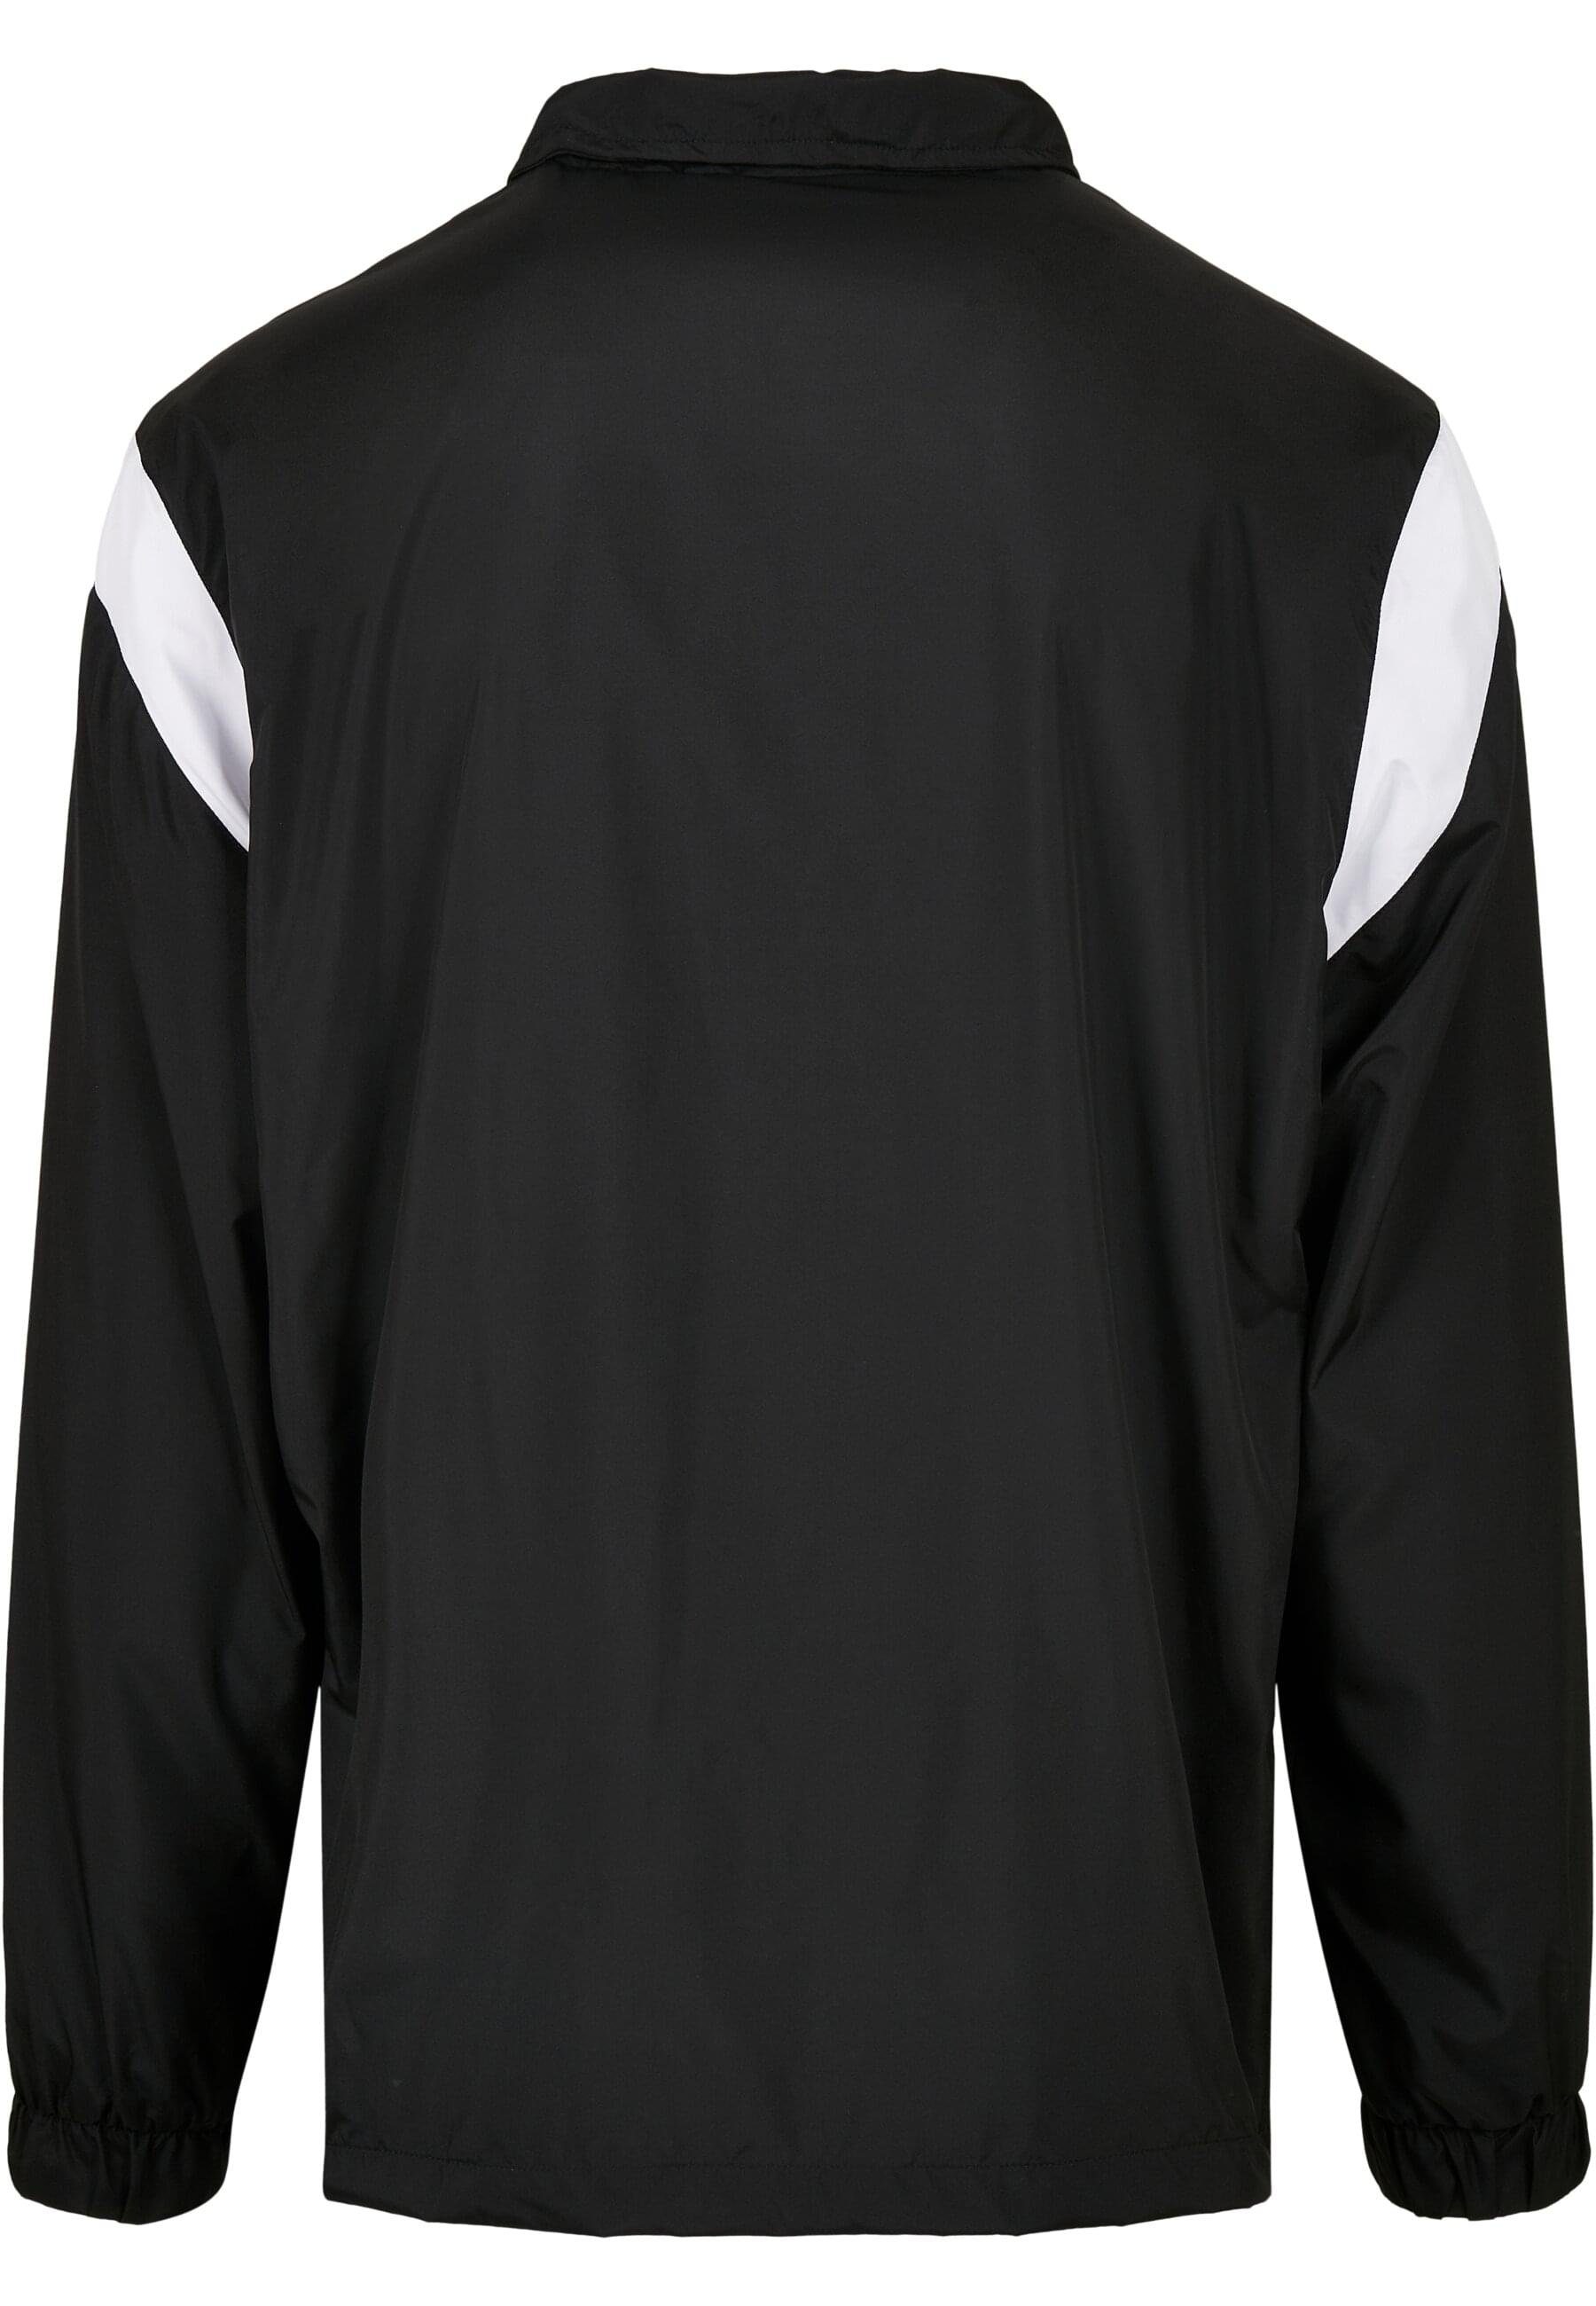 Starter Outdoorjacke Herren Starter Half Jacket black/golden/white Zip Retro (1-St)